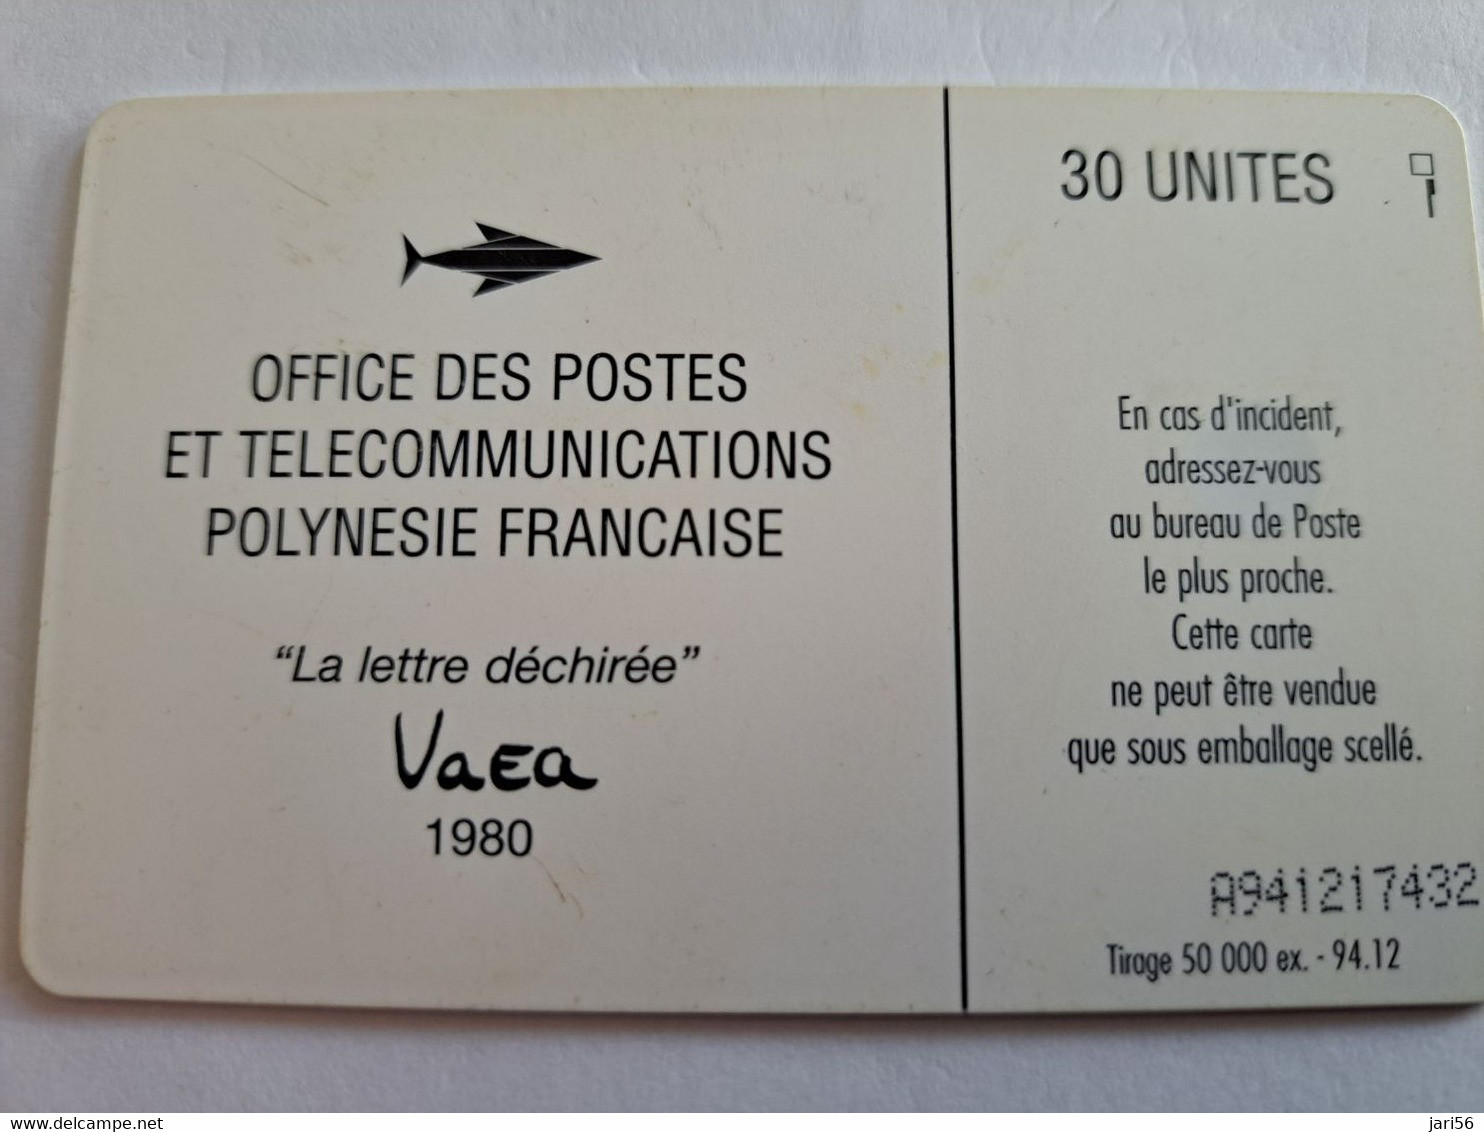 POLINESIA FRANCAISE  CHIPCARD  30 UNITS  LA LETTRE DECHIREE  VAEA 1980/ POLYNESIEN                **10469** - French Polynesia